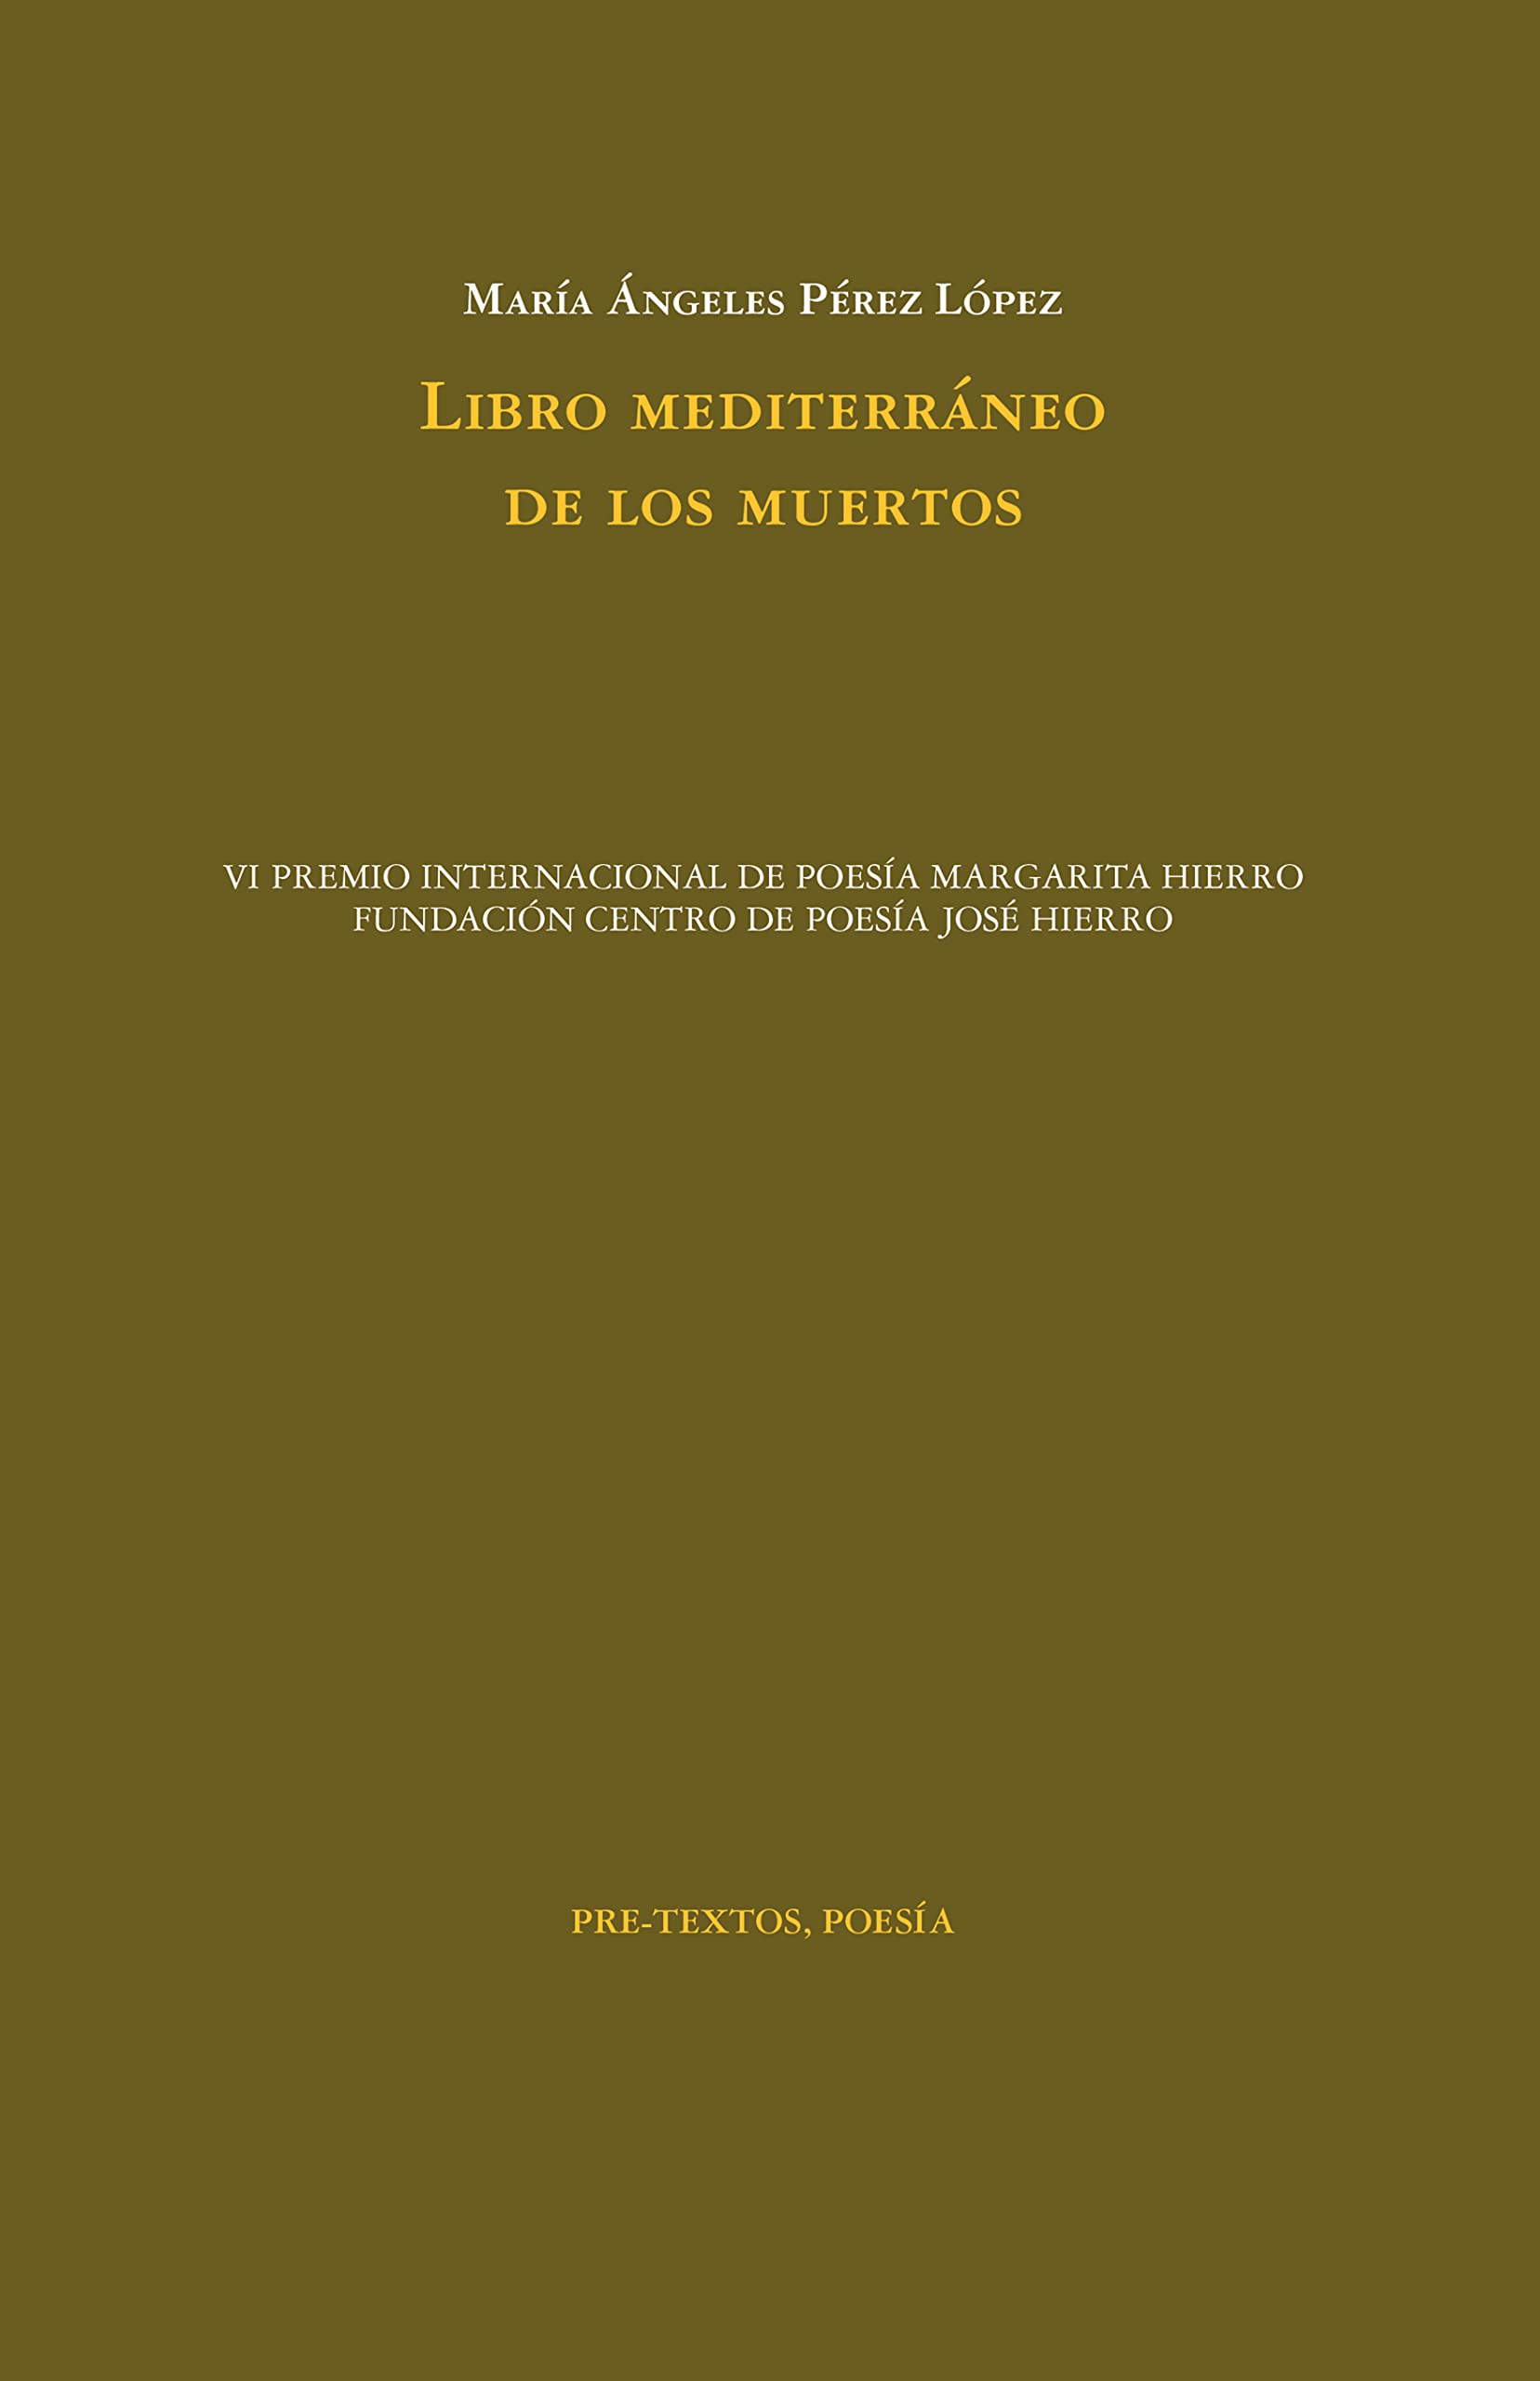 Zenda recomienda: Libro mediterráneo de los muertos, de María Ángeles Pérez López